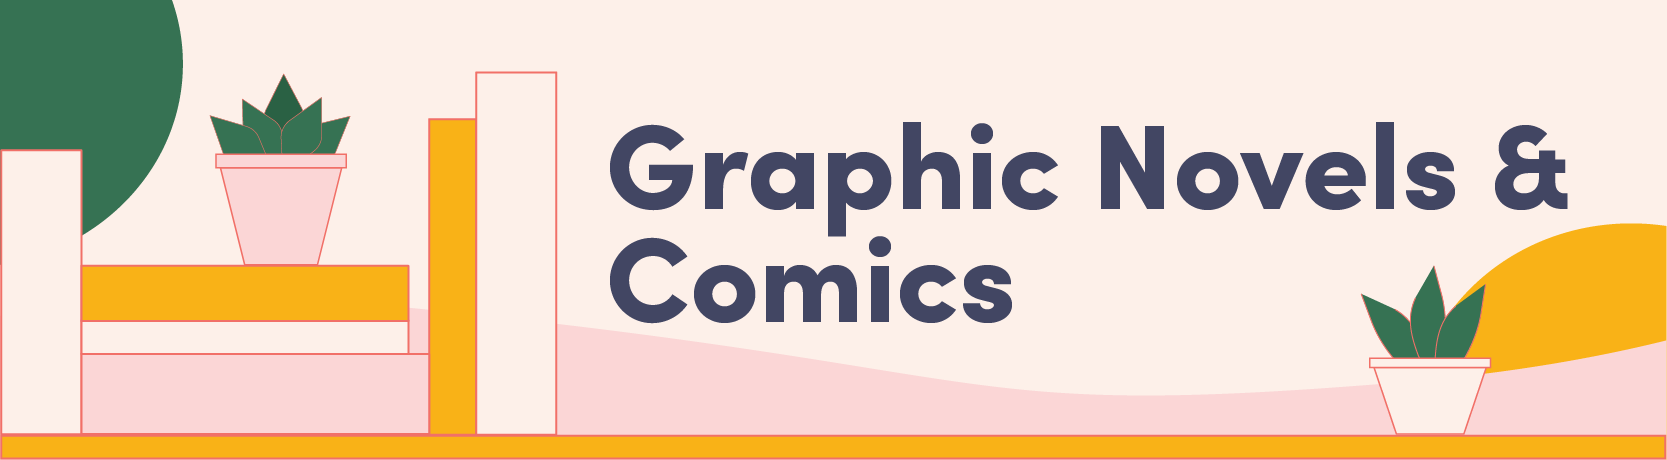 Graphic Novels and Comics